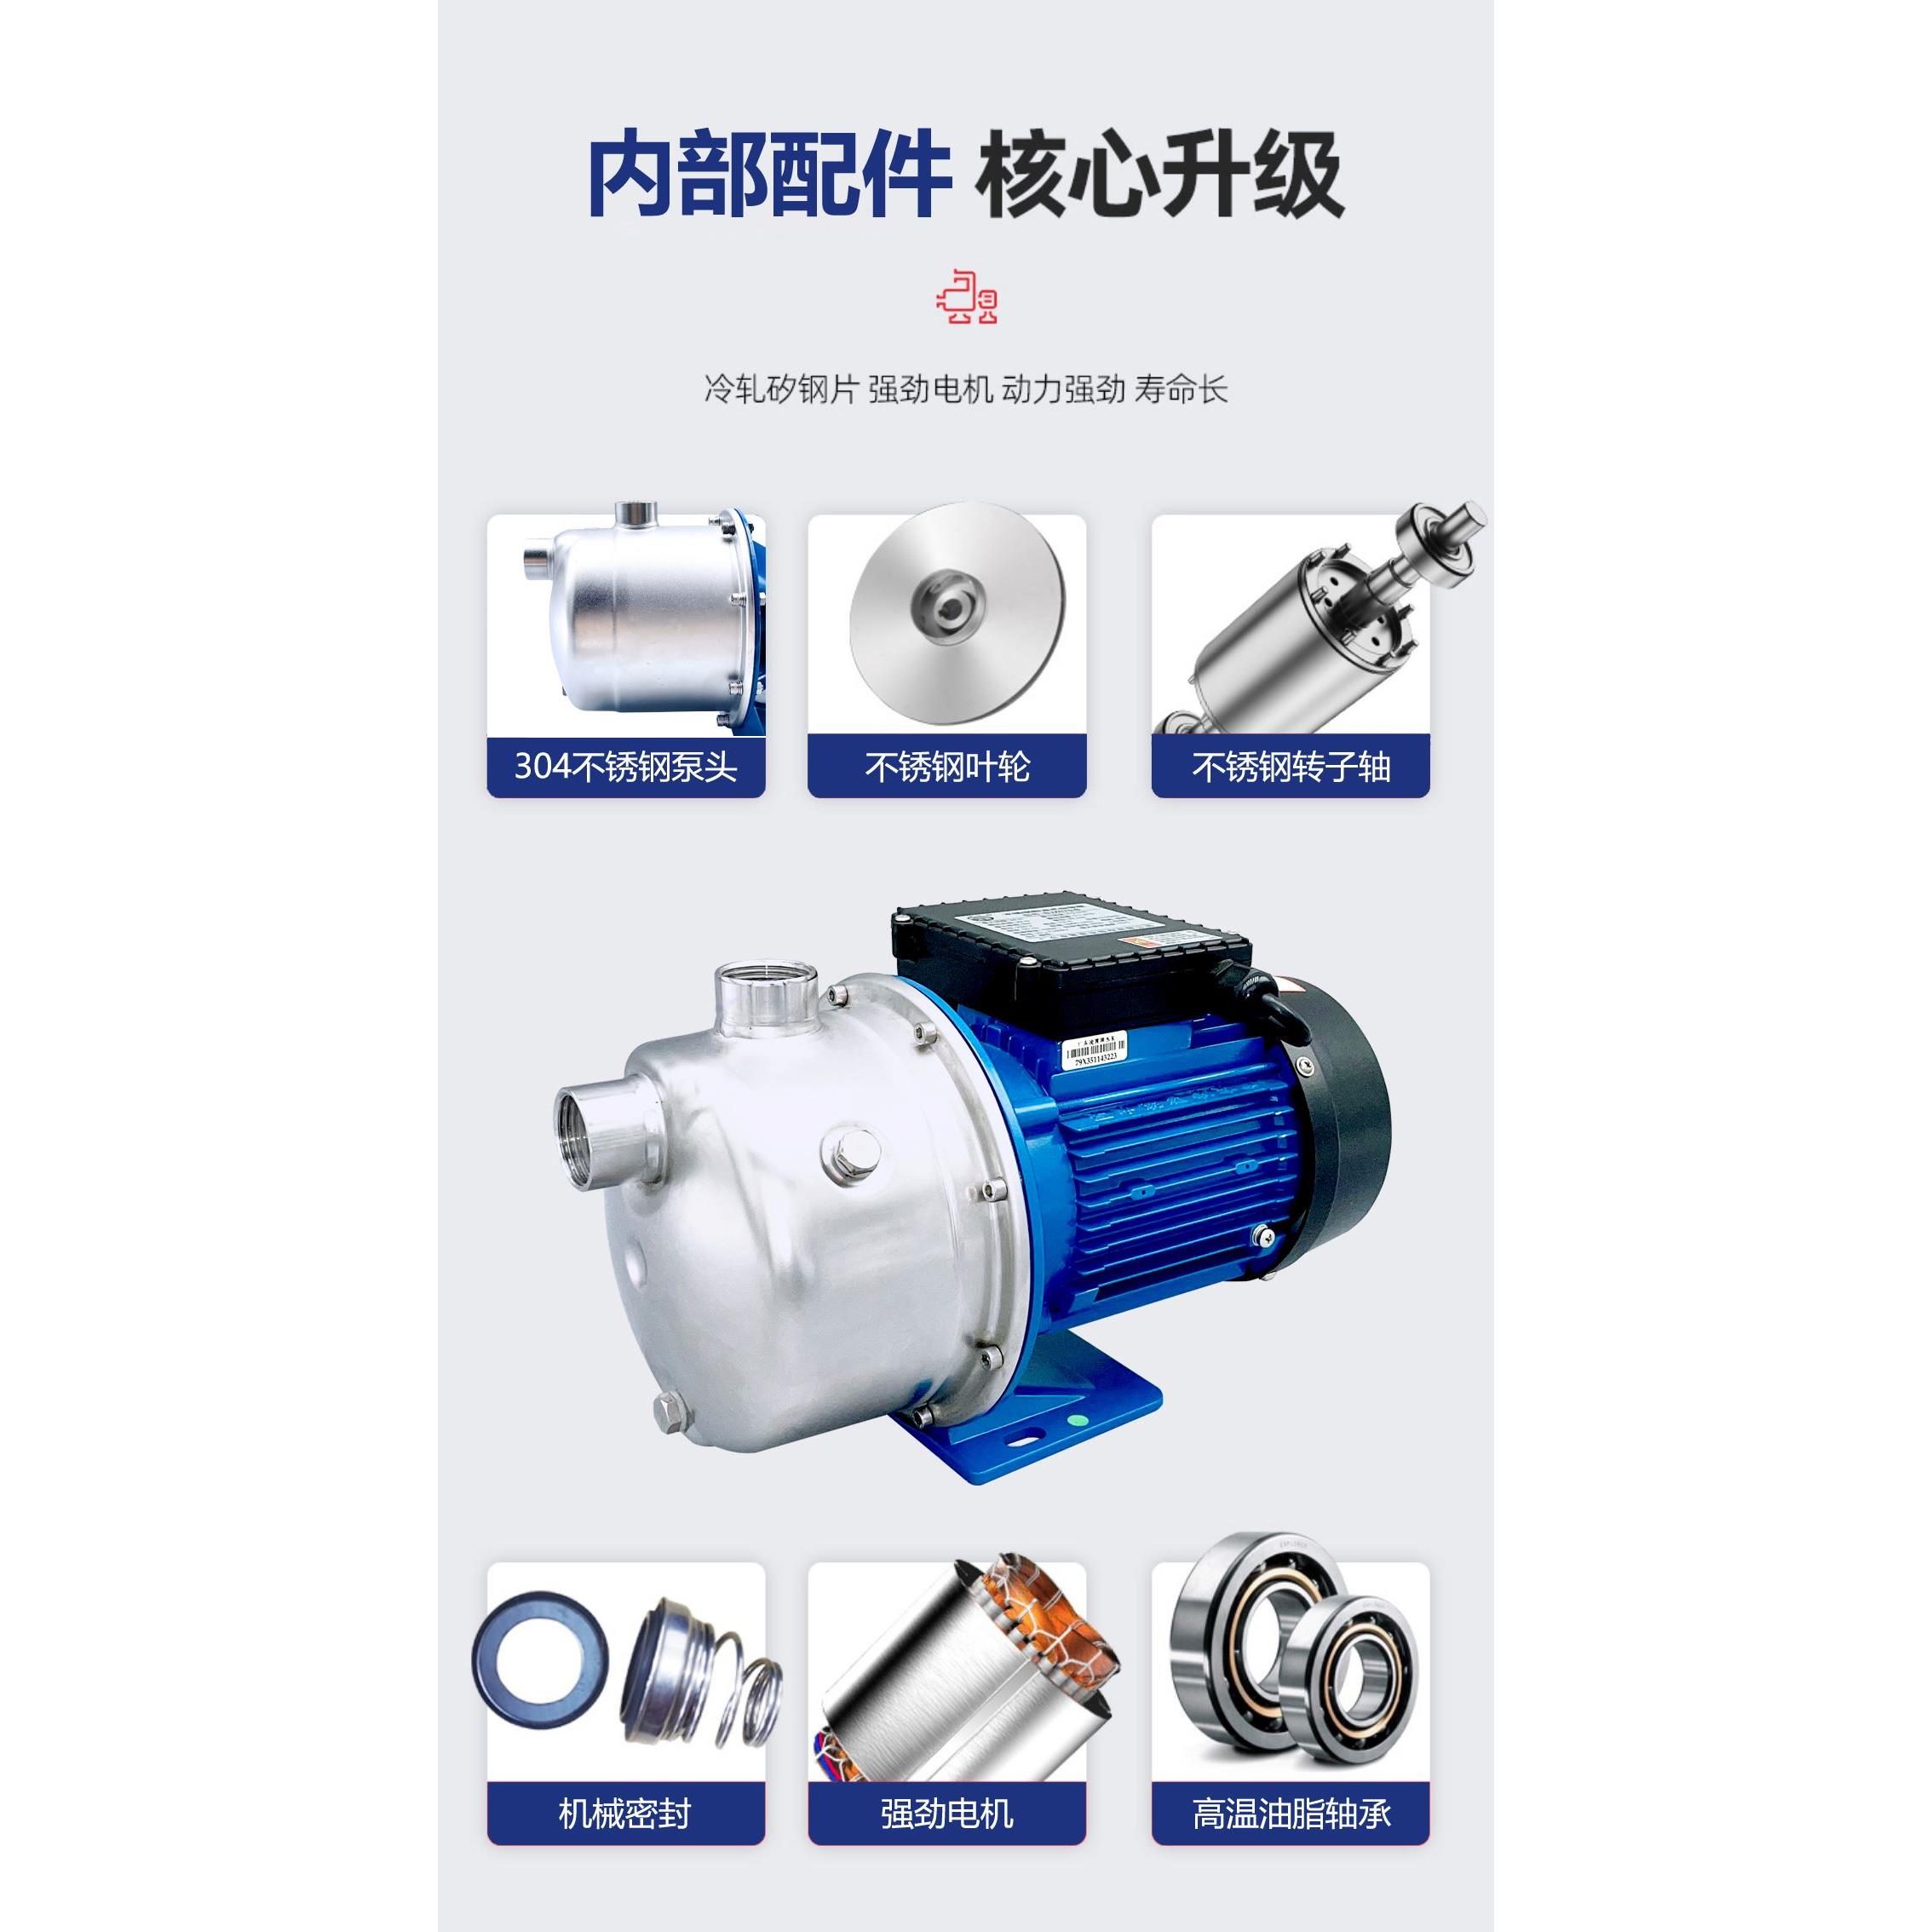 广东bjz增压泵家用全自动静音自来水不锈钢自吸喷射型抽水泵 - 图1